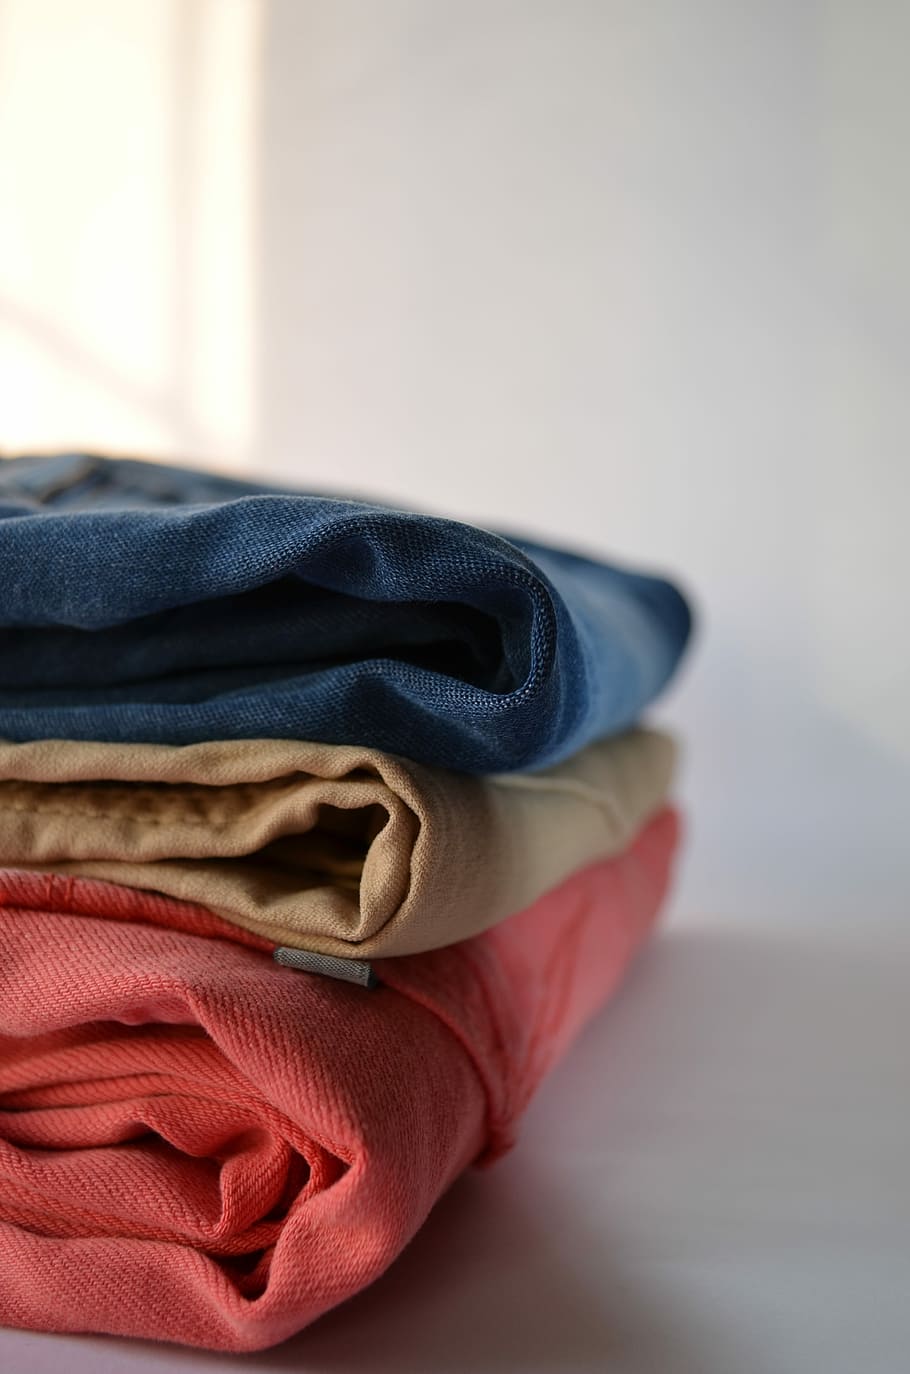 Lavandería, pantalones, ropa, textiles, prendas de vestir, tareas domésticas, algodón, moda, lavado, jeans